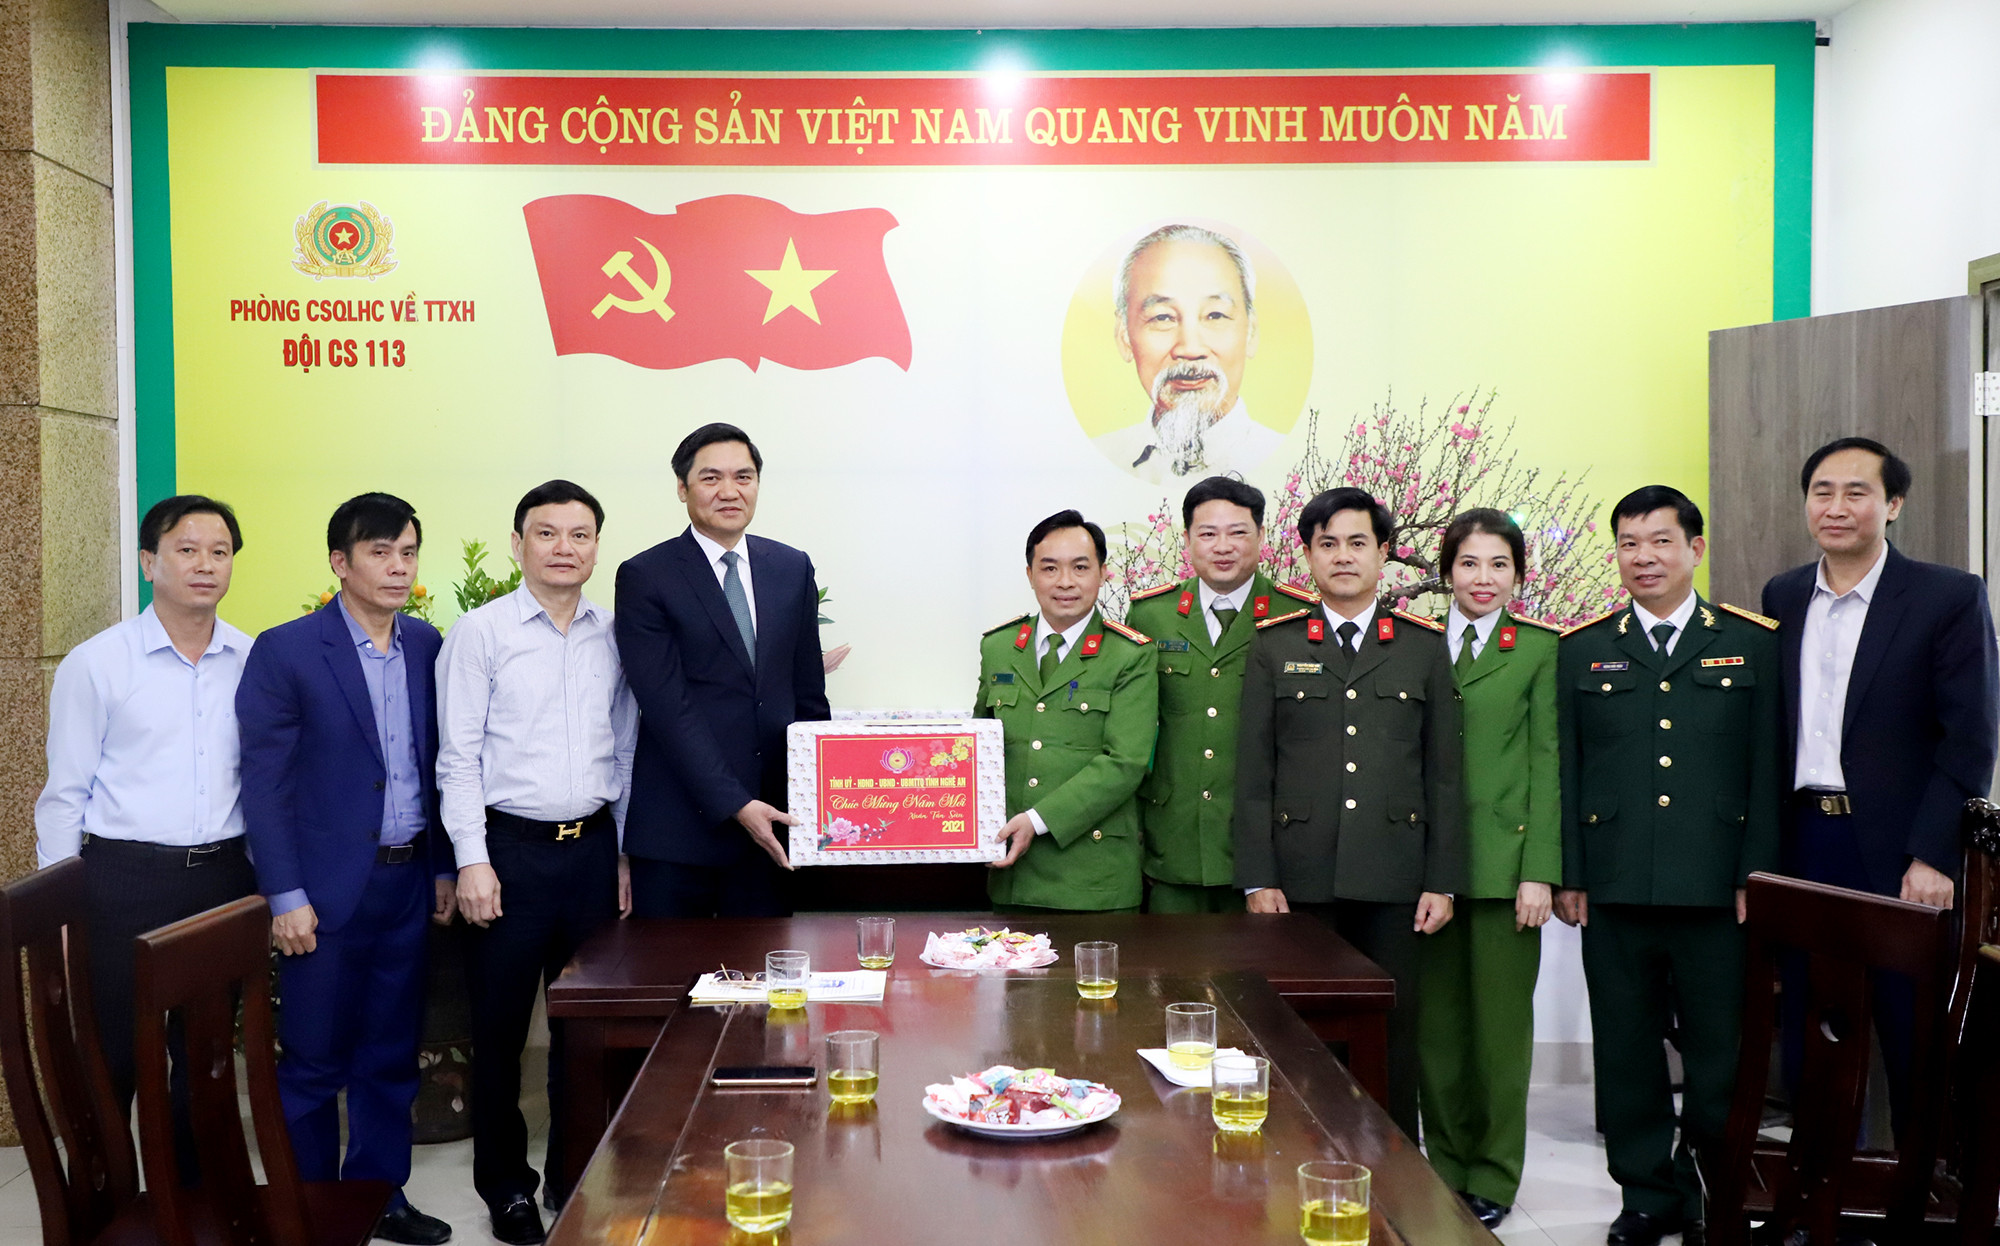 Đồng chí Hoàng Nghĩa Hiếu - Phó Chủ tịch UBND tặng quà Tết cho đội Cảnh sát 113. Ảnh: Phạm Bằng